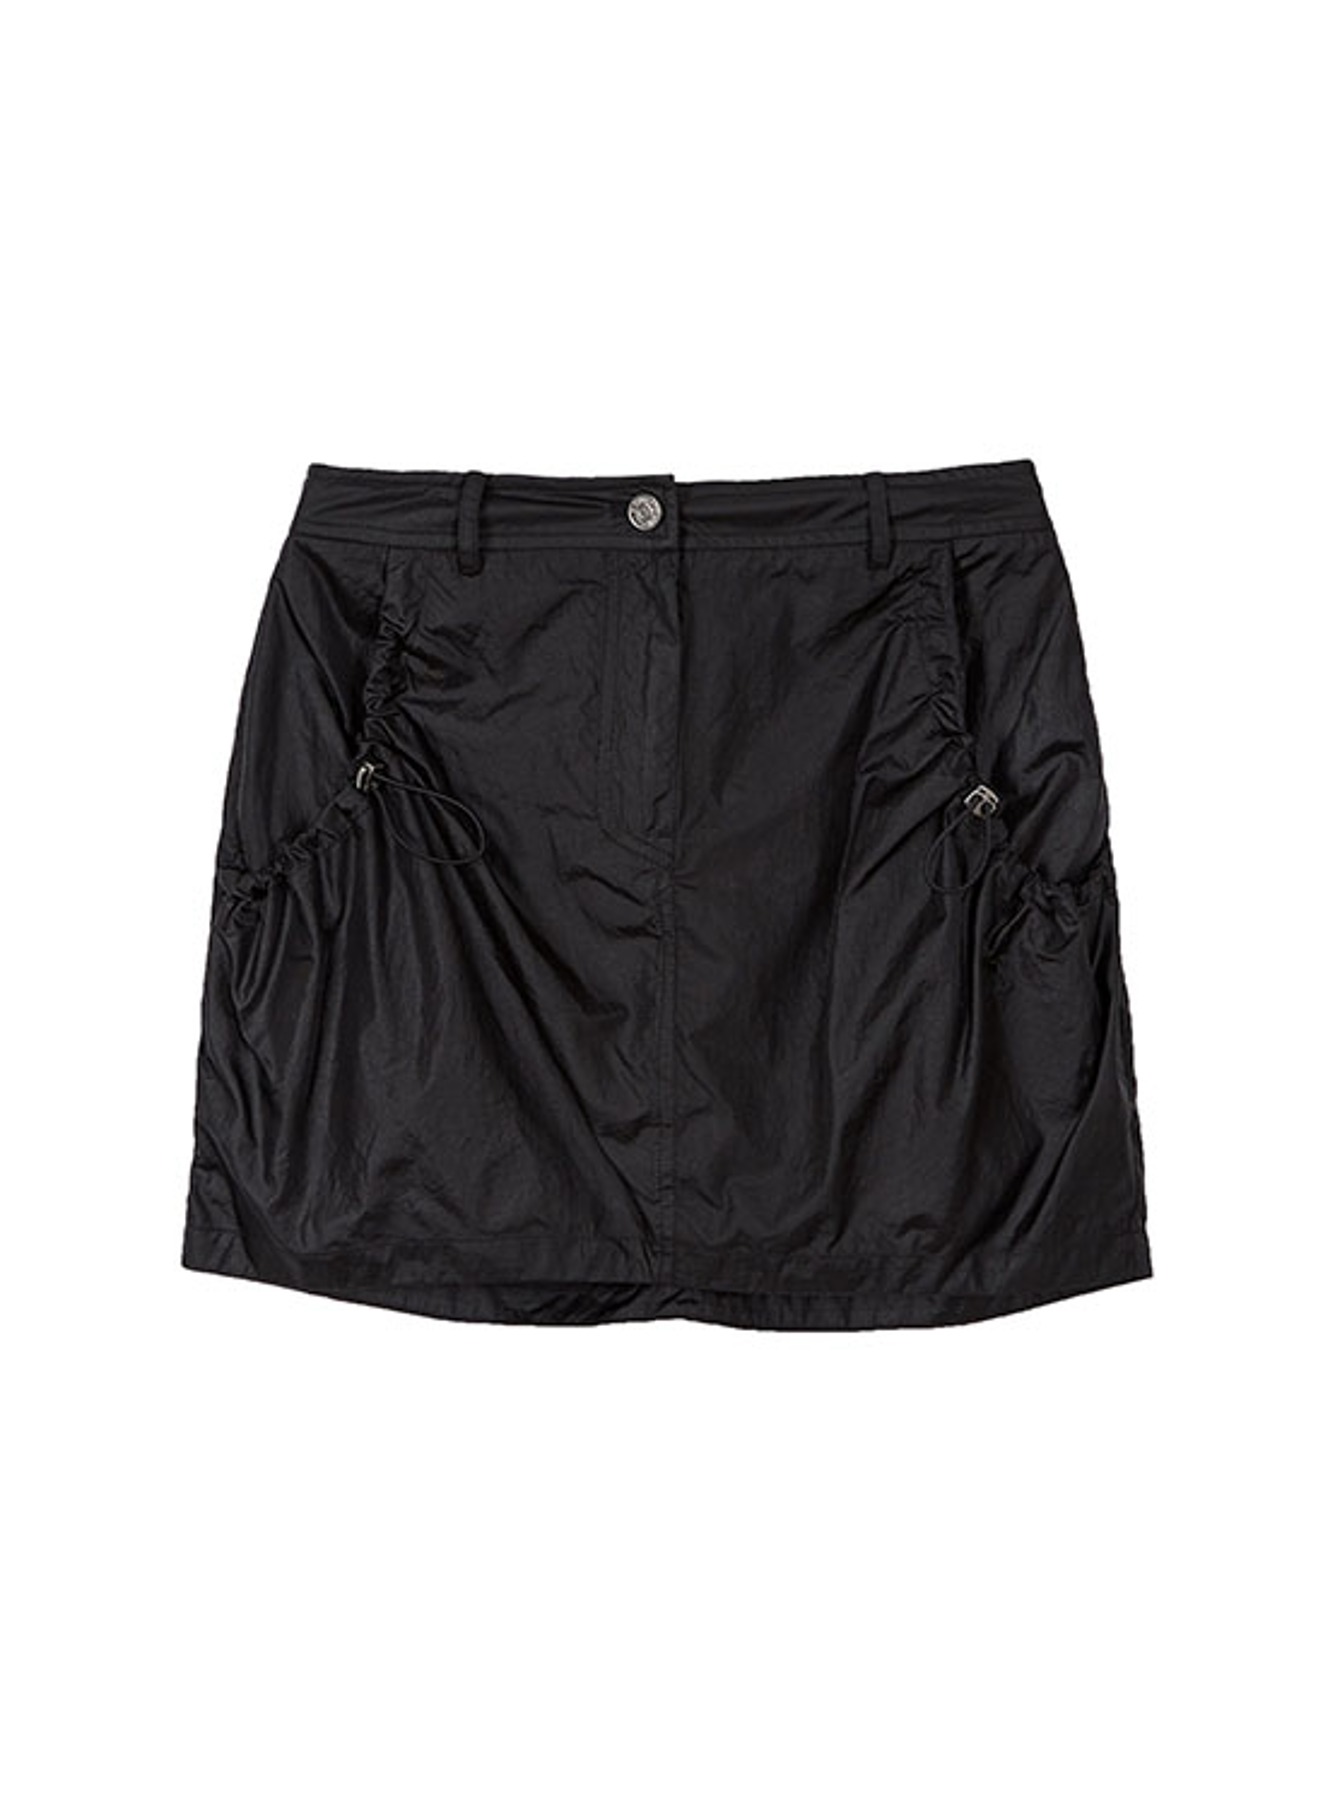 Pocket Shirring Skirt in Black VW3MS103-10